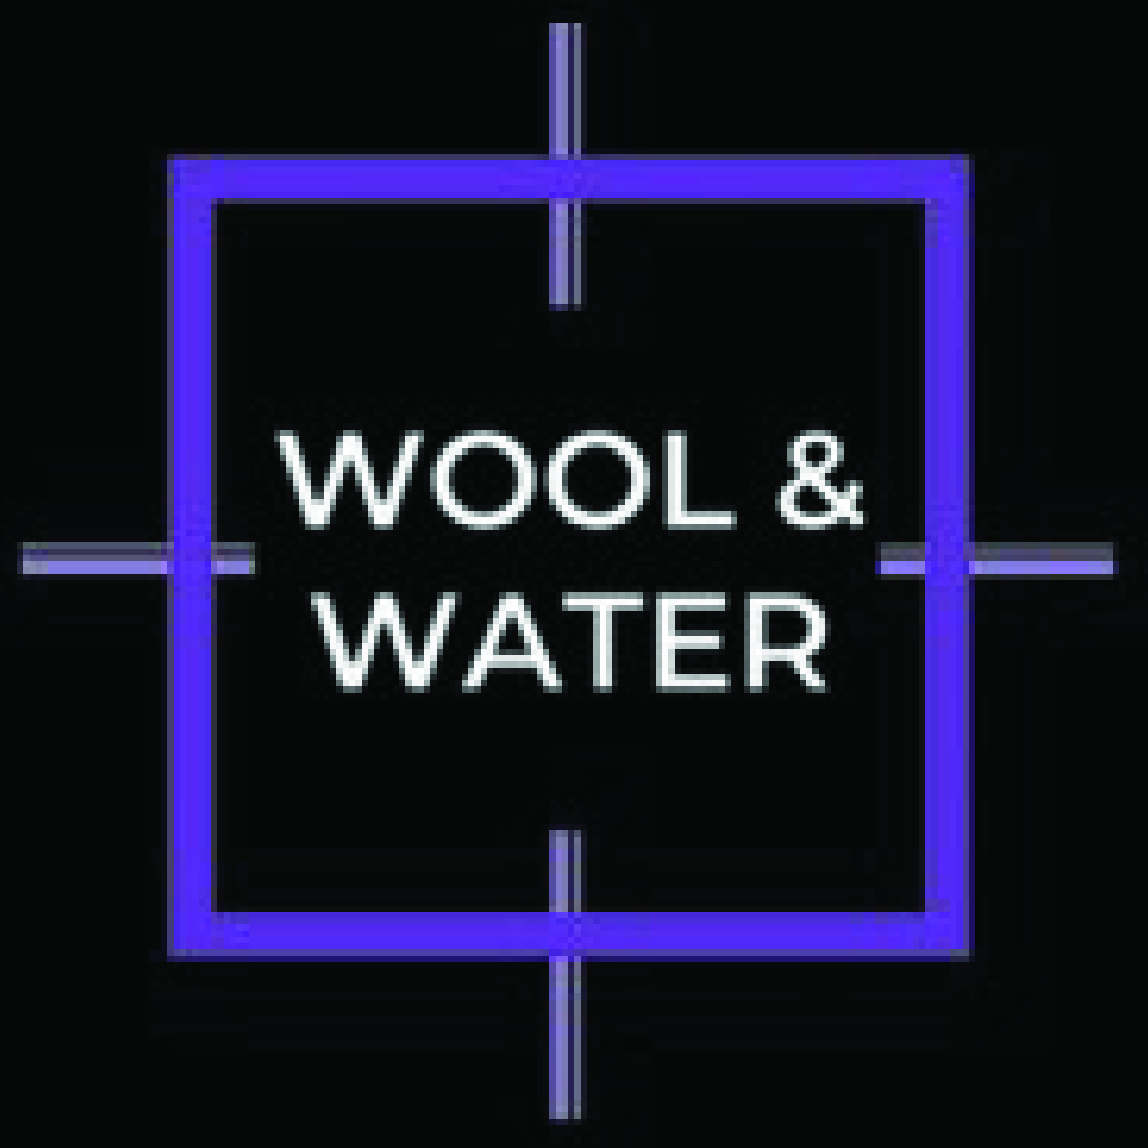 Wool & Water